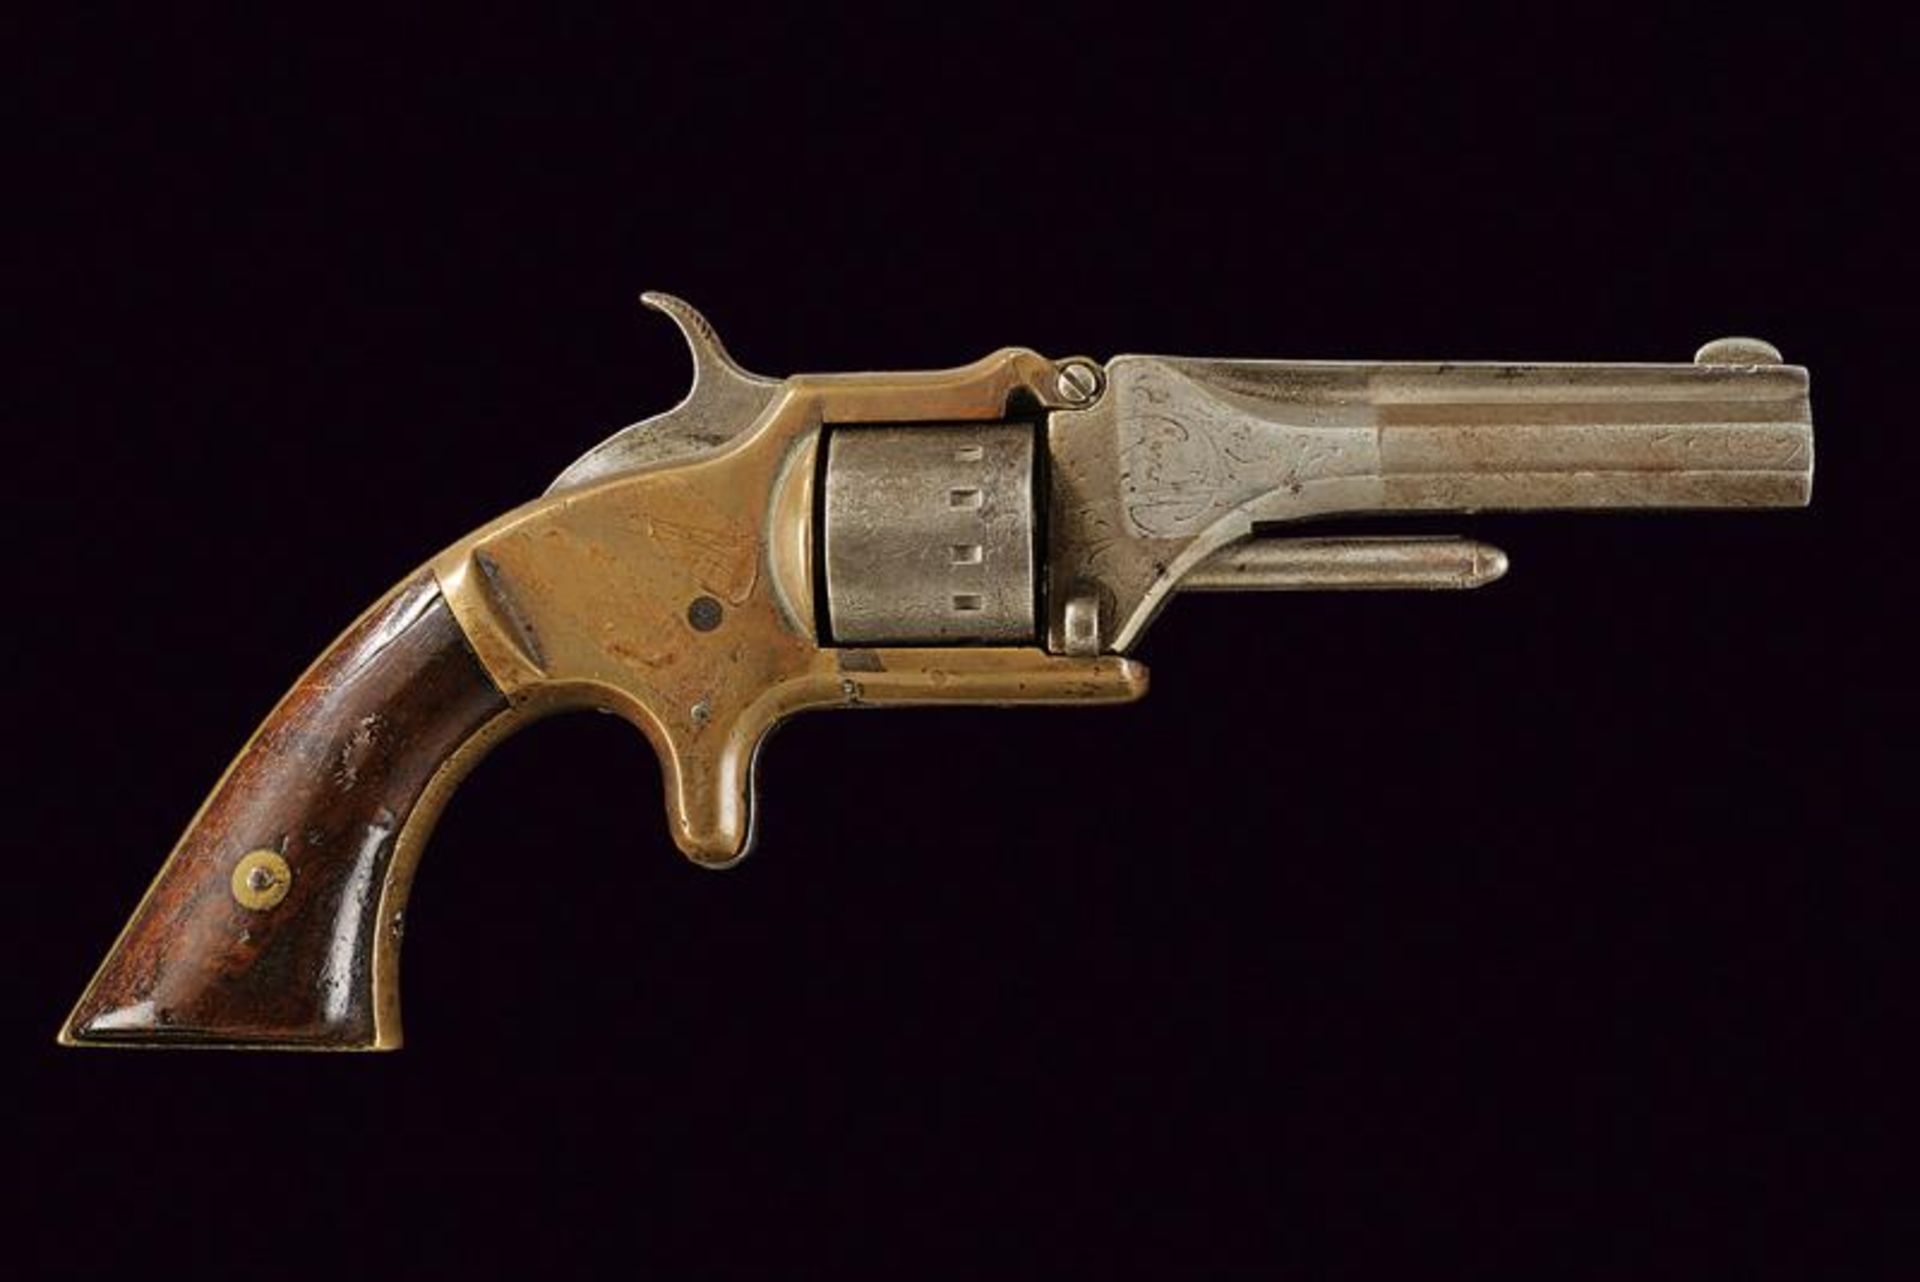 A Manhattan 22 Caliber Pocket Revolver, Second Model - Image 4 of 4